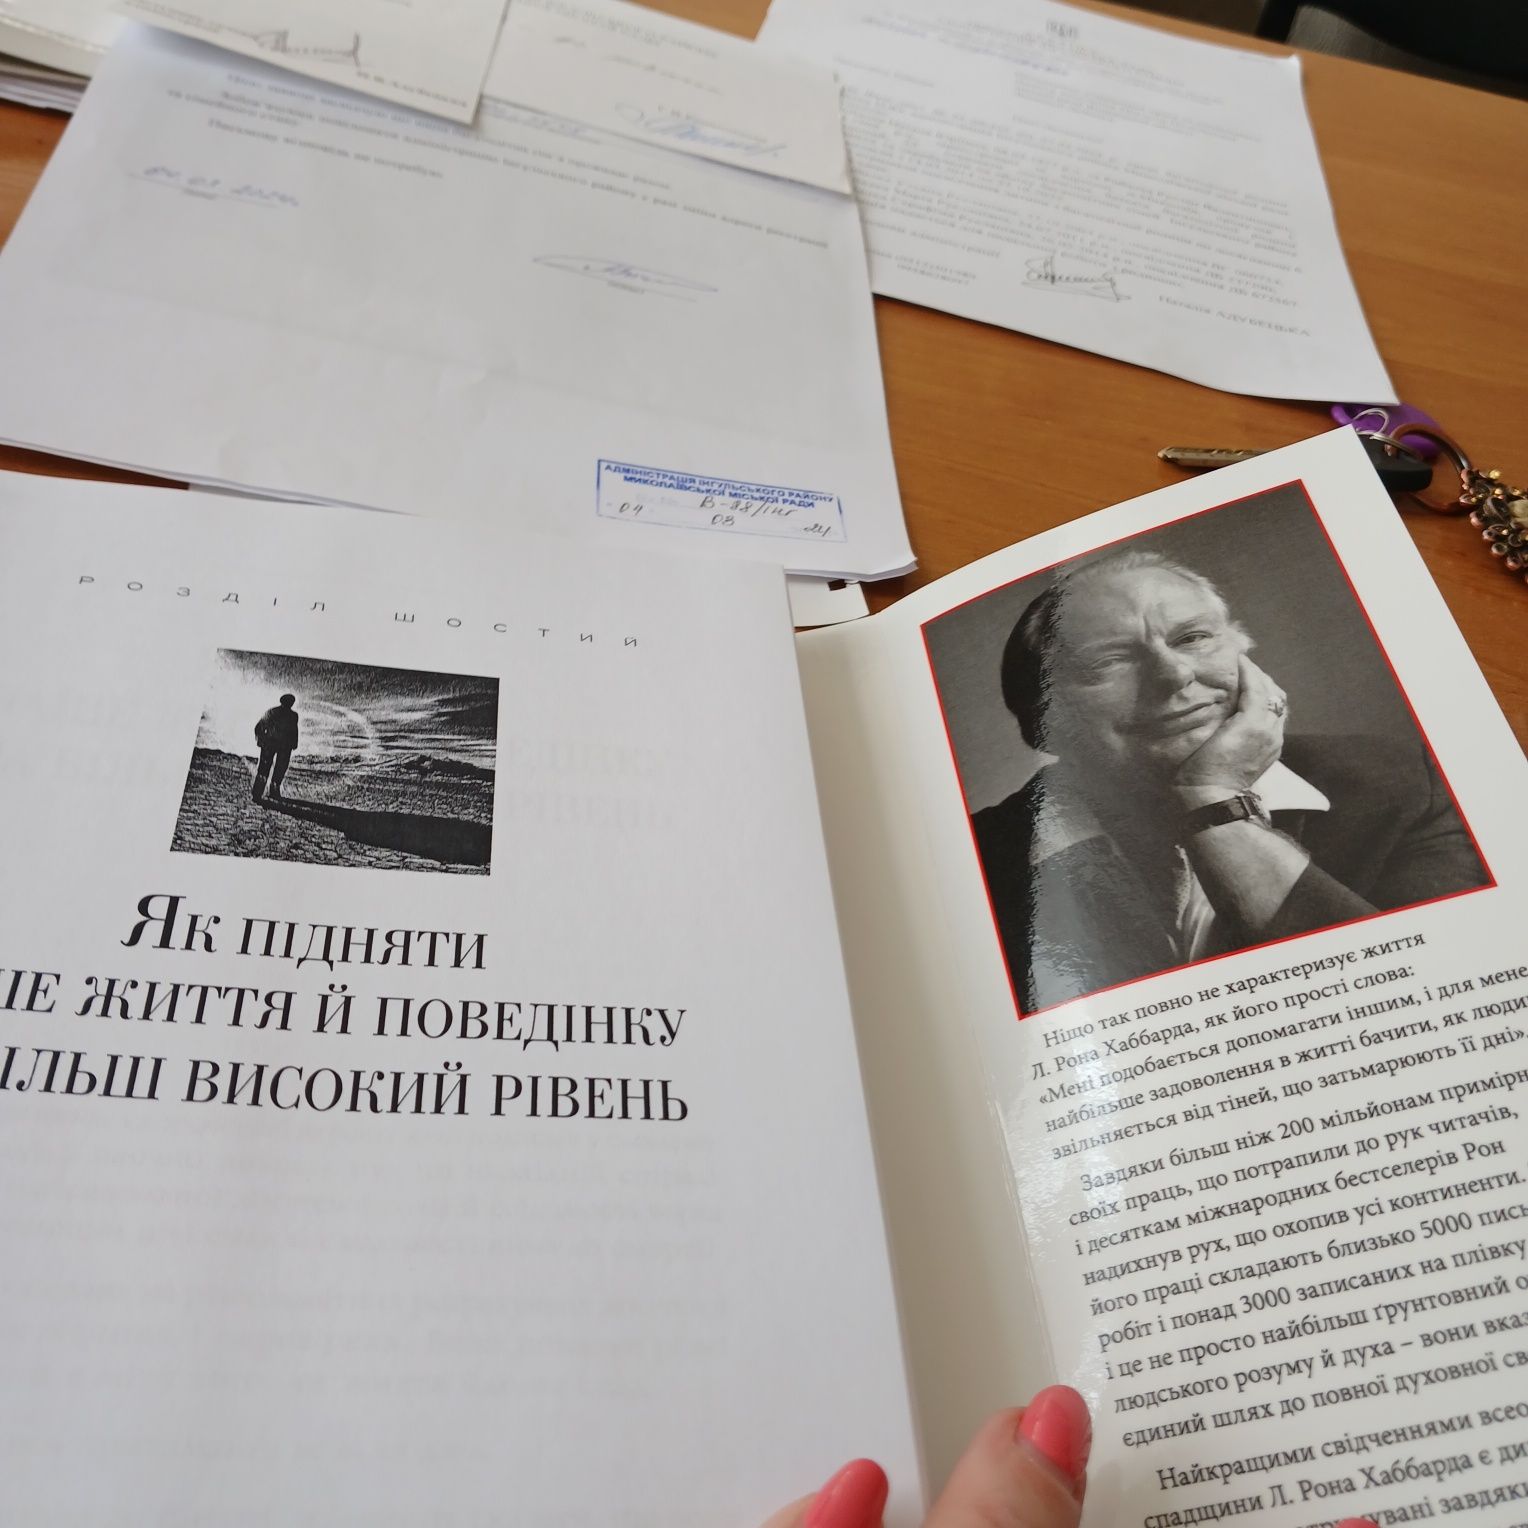 Бестселер українською Хаббард "Самоаналіз"за пів ціни